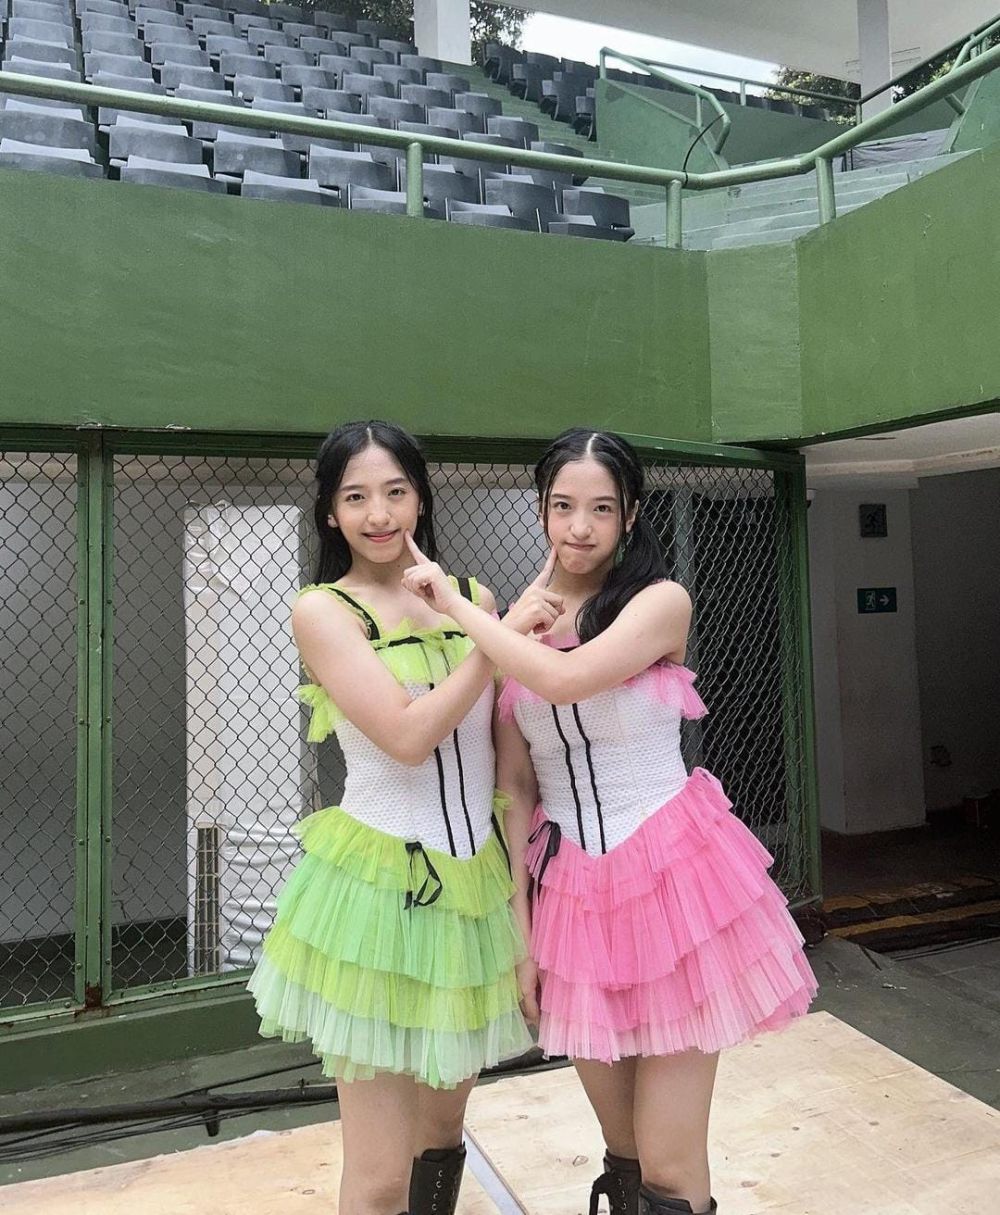 15 Potret Gemas Daisy dan Danella, Trainee JKT48 yang Kembar